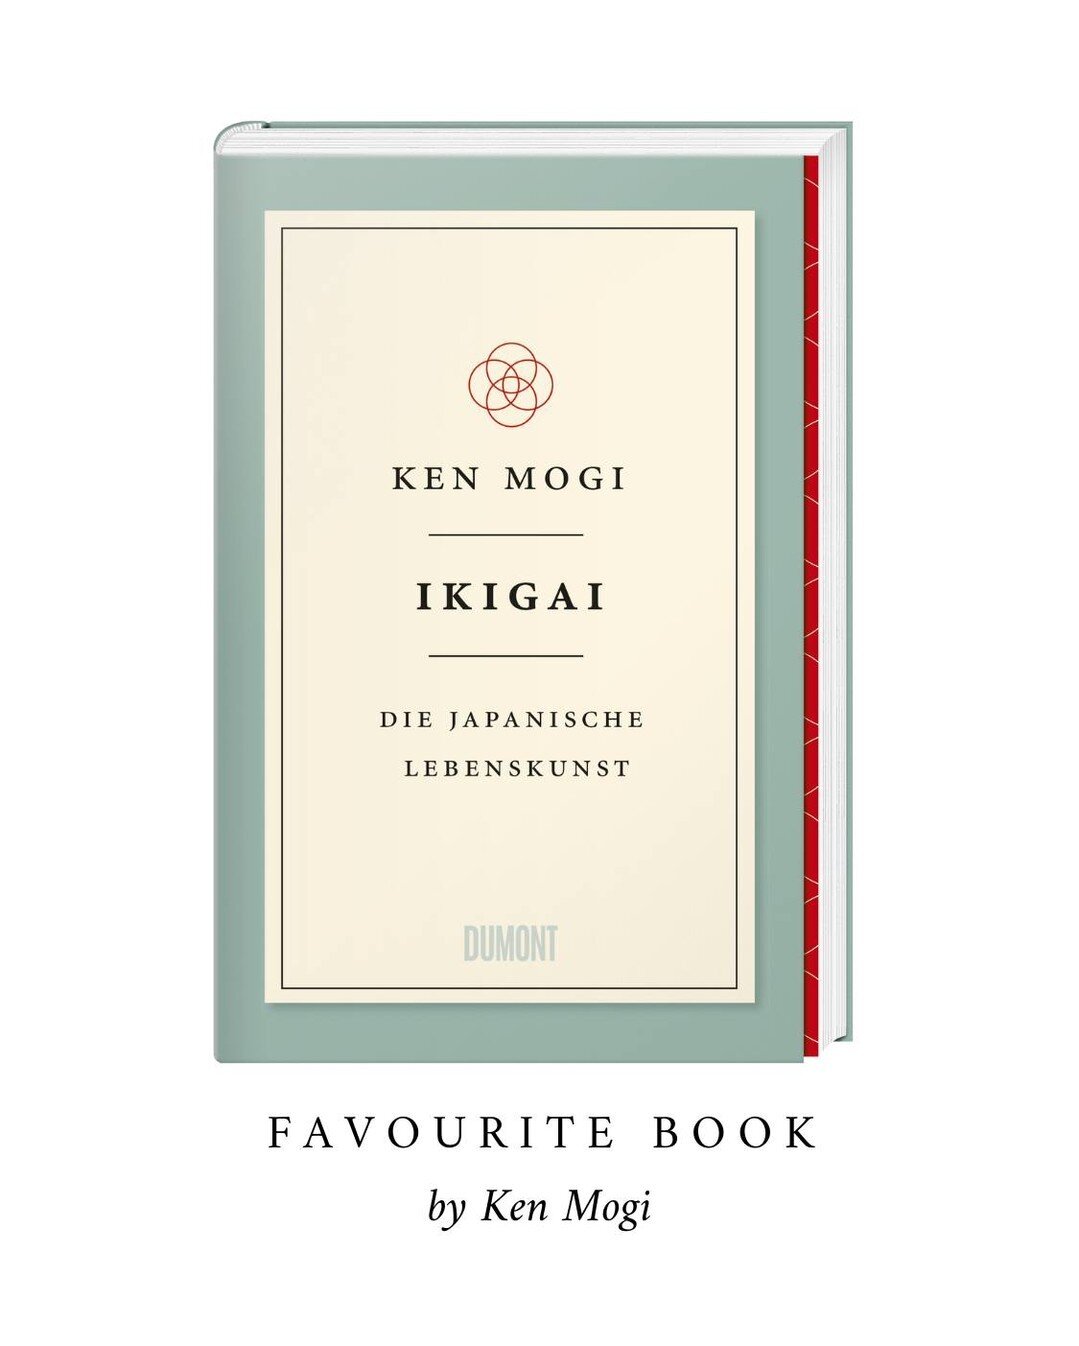 ikigai ist &bdquo;das, wof&uuml;r es sich zu leben lohnt&ldquo;, sagt der japanische Hirnforscher Ken Mogi.⁠
⁠
Die F&uuml;nf S&auml;ulen des ikigai:⁠
1. Klein anfangen⁠
2. Loslassen lernen⁠
3. Harmonie und Nachhaltigkeit leben⁠
4. Die Freude an klein